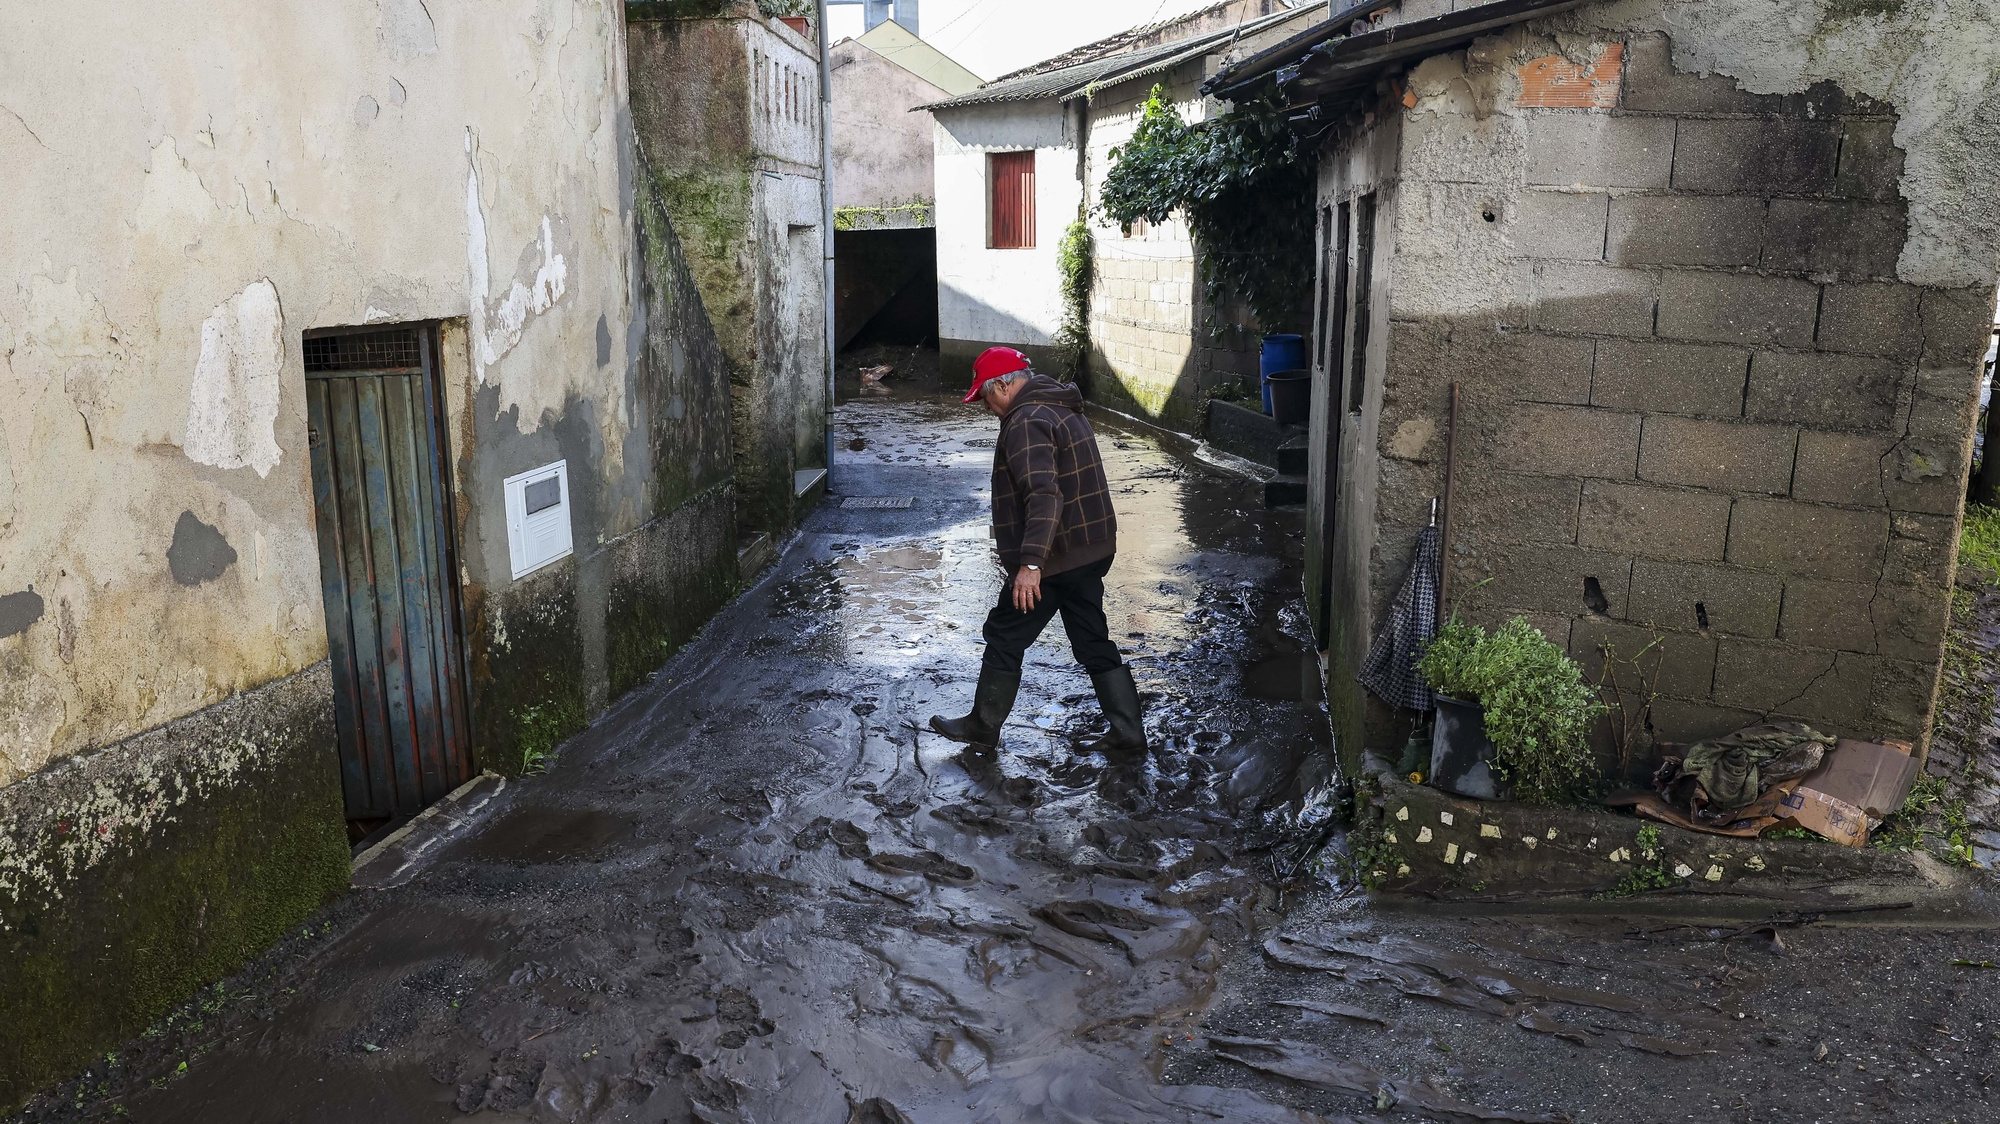 Habitantes limpam as casas e as ruas inundada pela subida das águas do Rio Ceira devido à chuva que causou inundações em algumas habitações e obrigou ao corte de algumas estradas na localidade de Cabouco, Ceira, Coimbra, 9 de janeiro de 2023. PAULO NOVAIS/LUSA